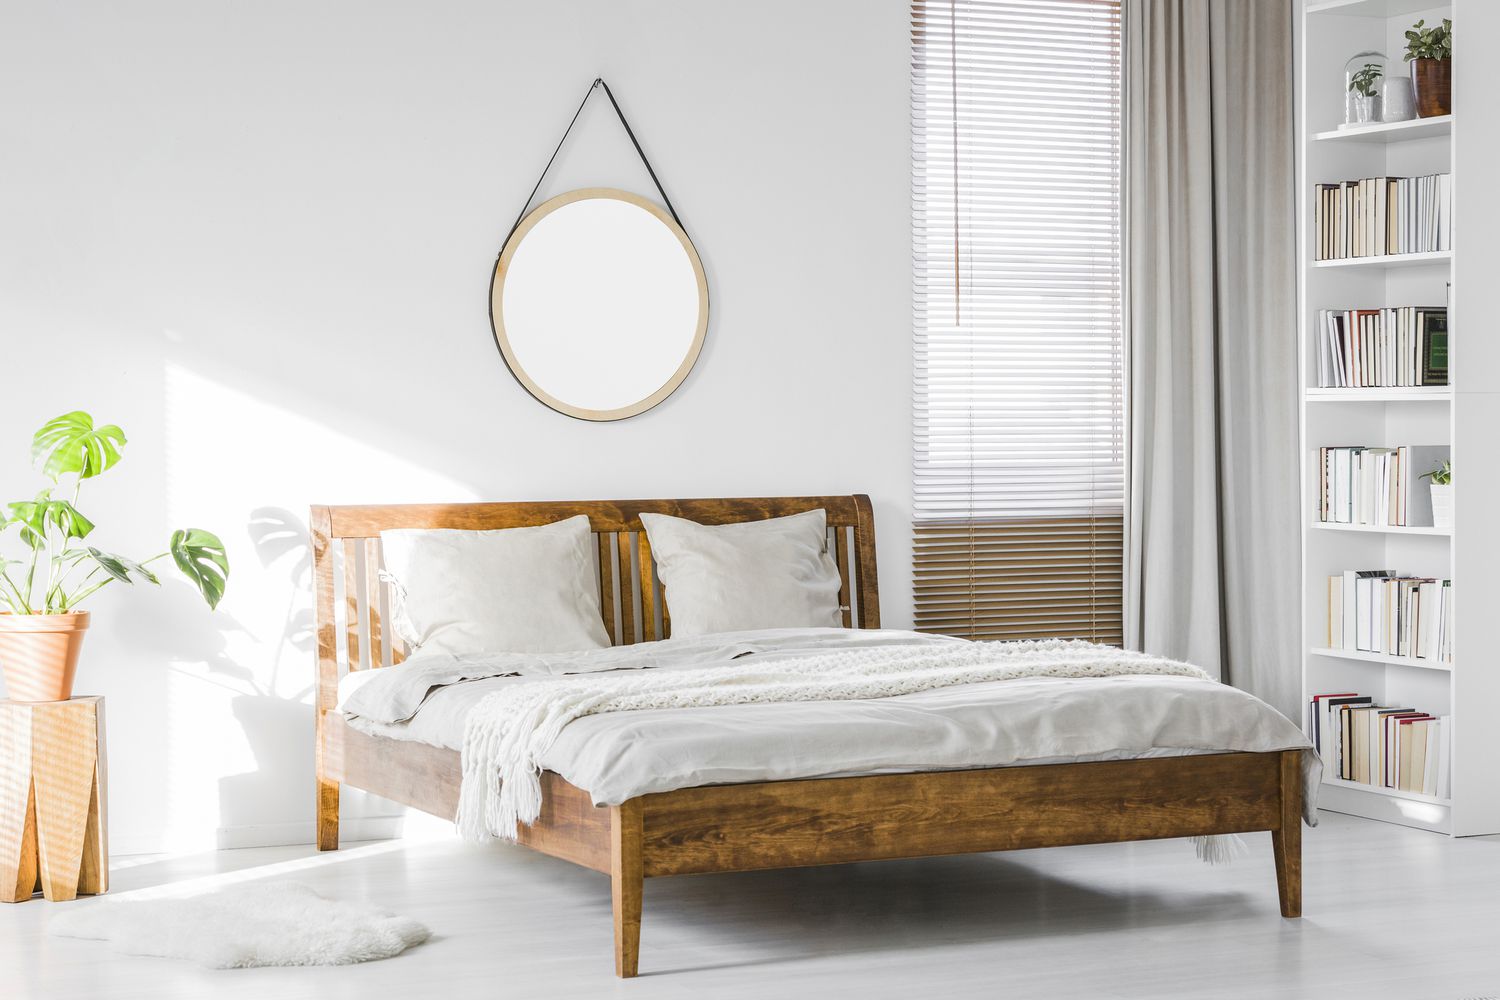 Un marco de cama rústico de madera y una estantería de biblioteca doméstica en el interior de una habitación de hotel natural, iluminada por el sol y con paredes blancas